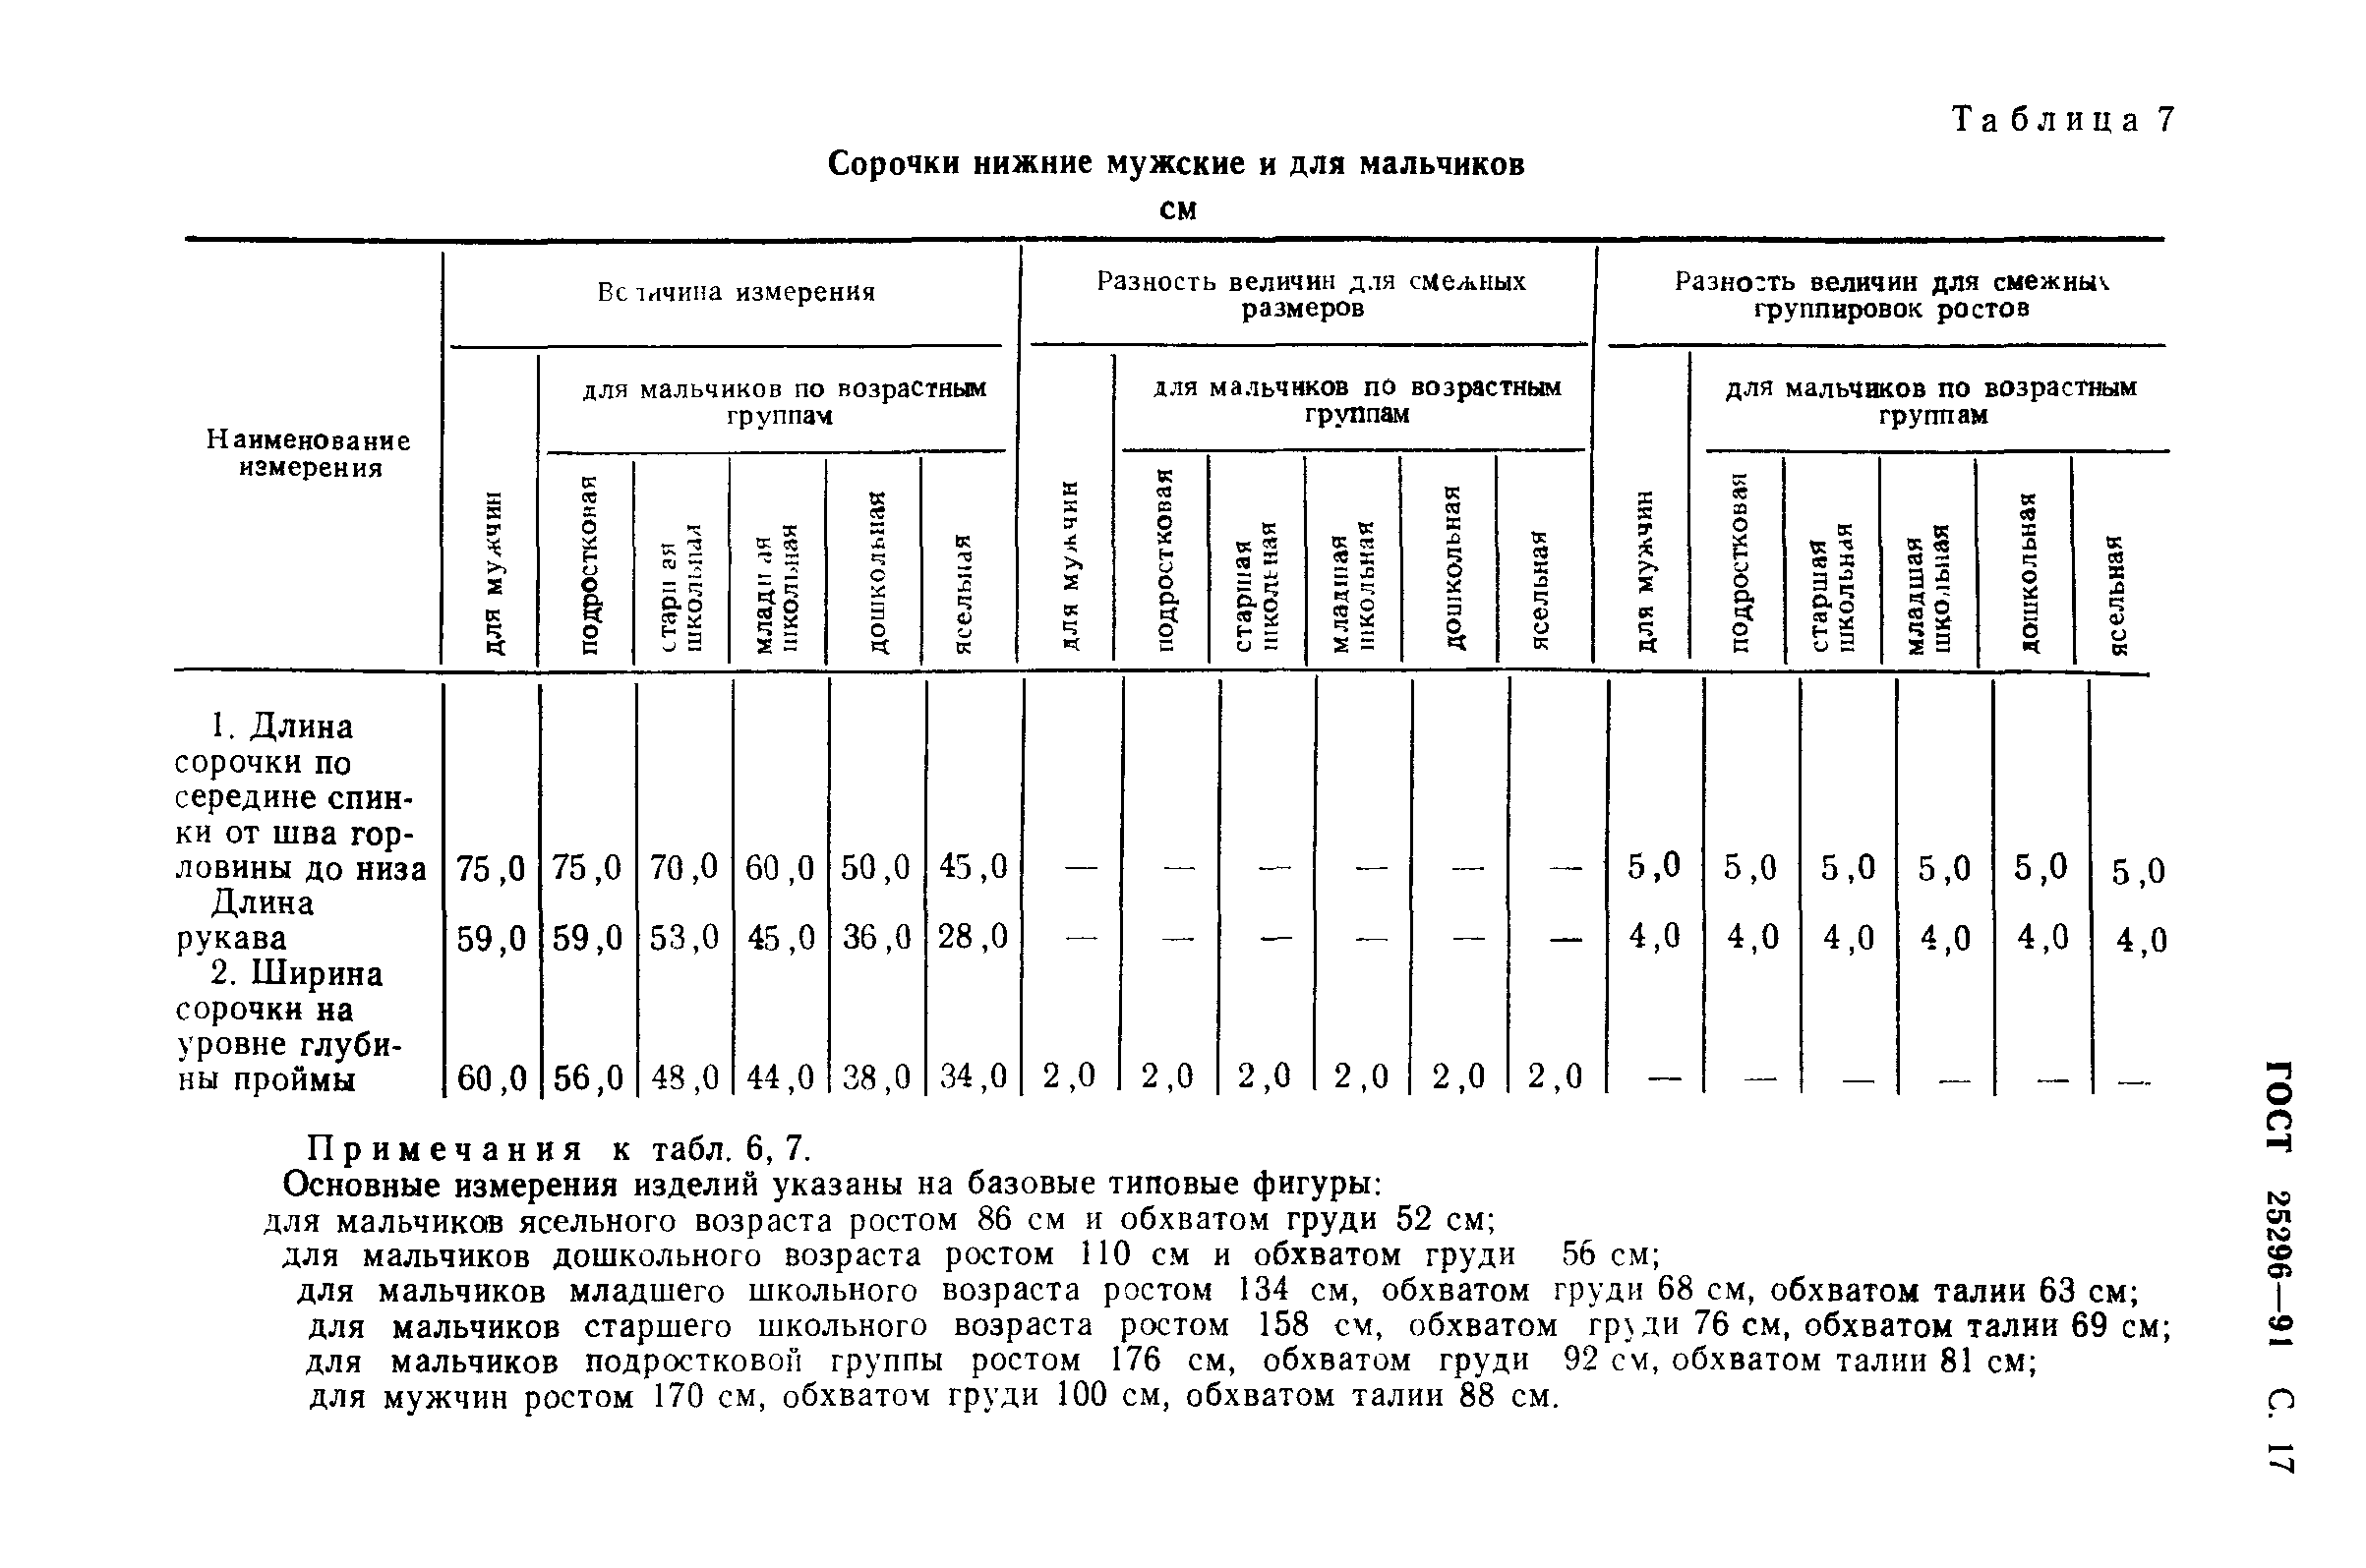 Таблица технических измерения изделия